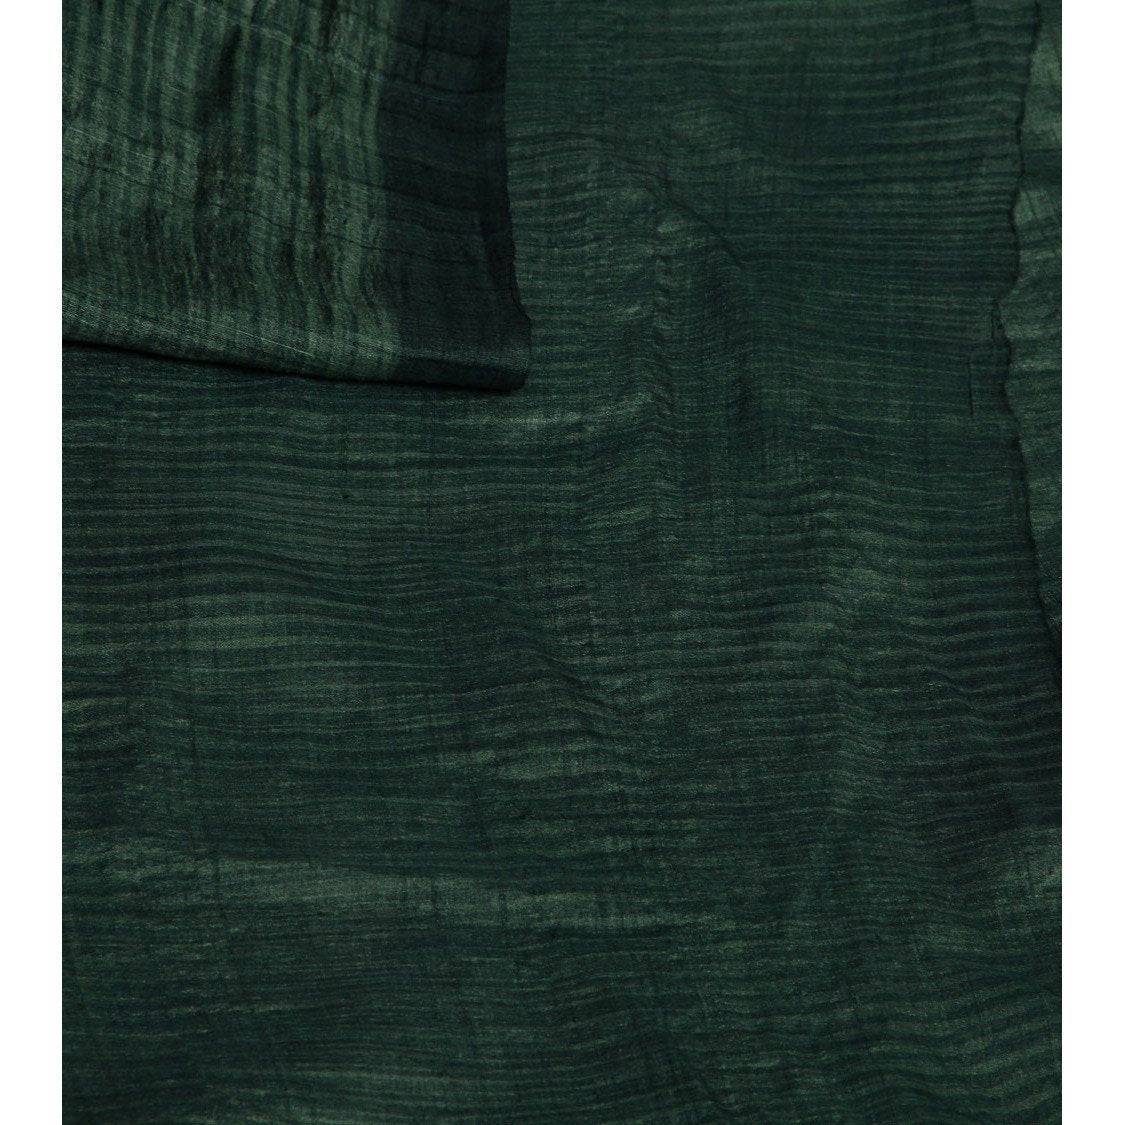 Green Silk Sarees